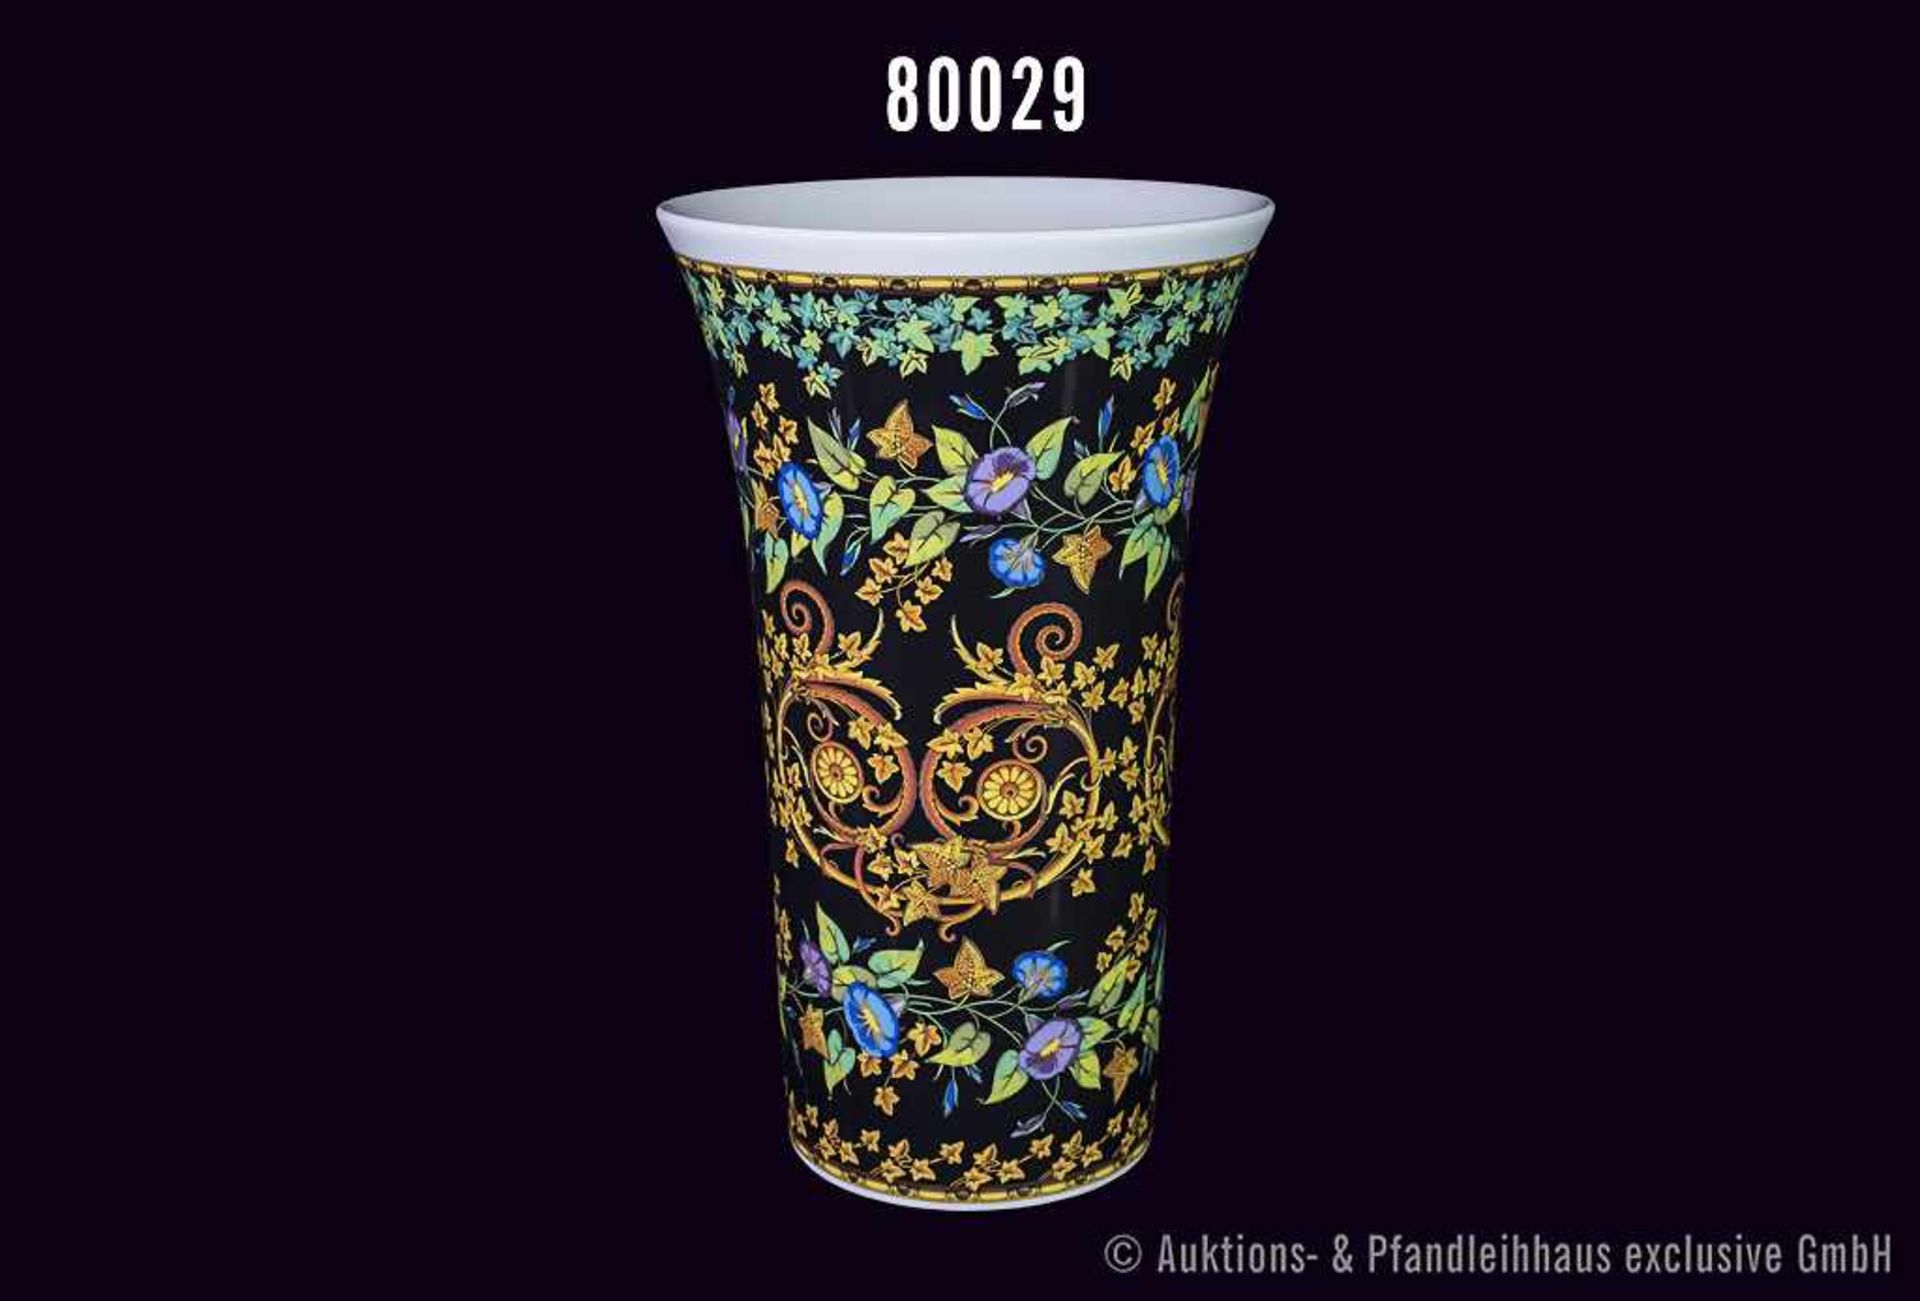 Rosenthal Porzellan Vase, "VERSACE", Gold Ivy, H 34 cm, sehr guter Zustand, siehe Anmerkung vor Text